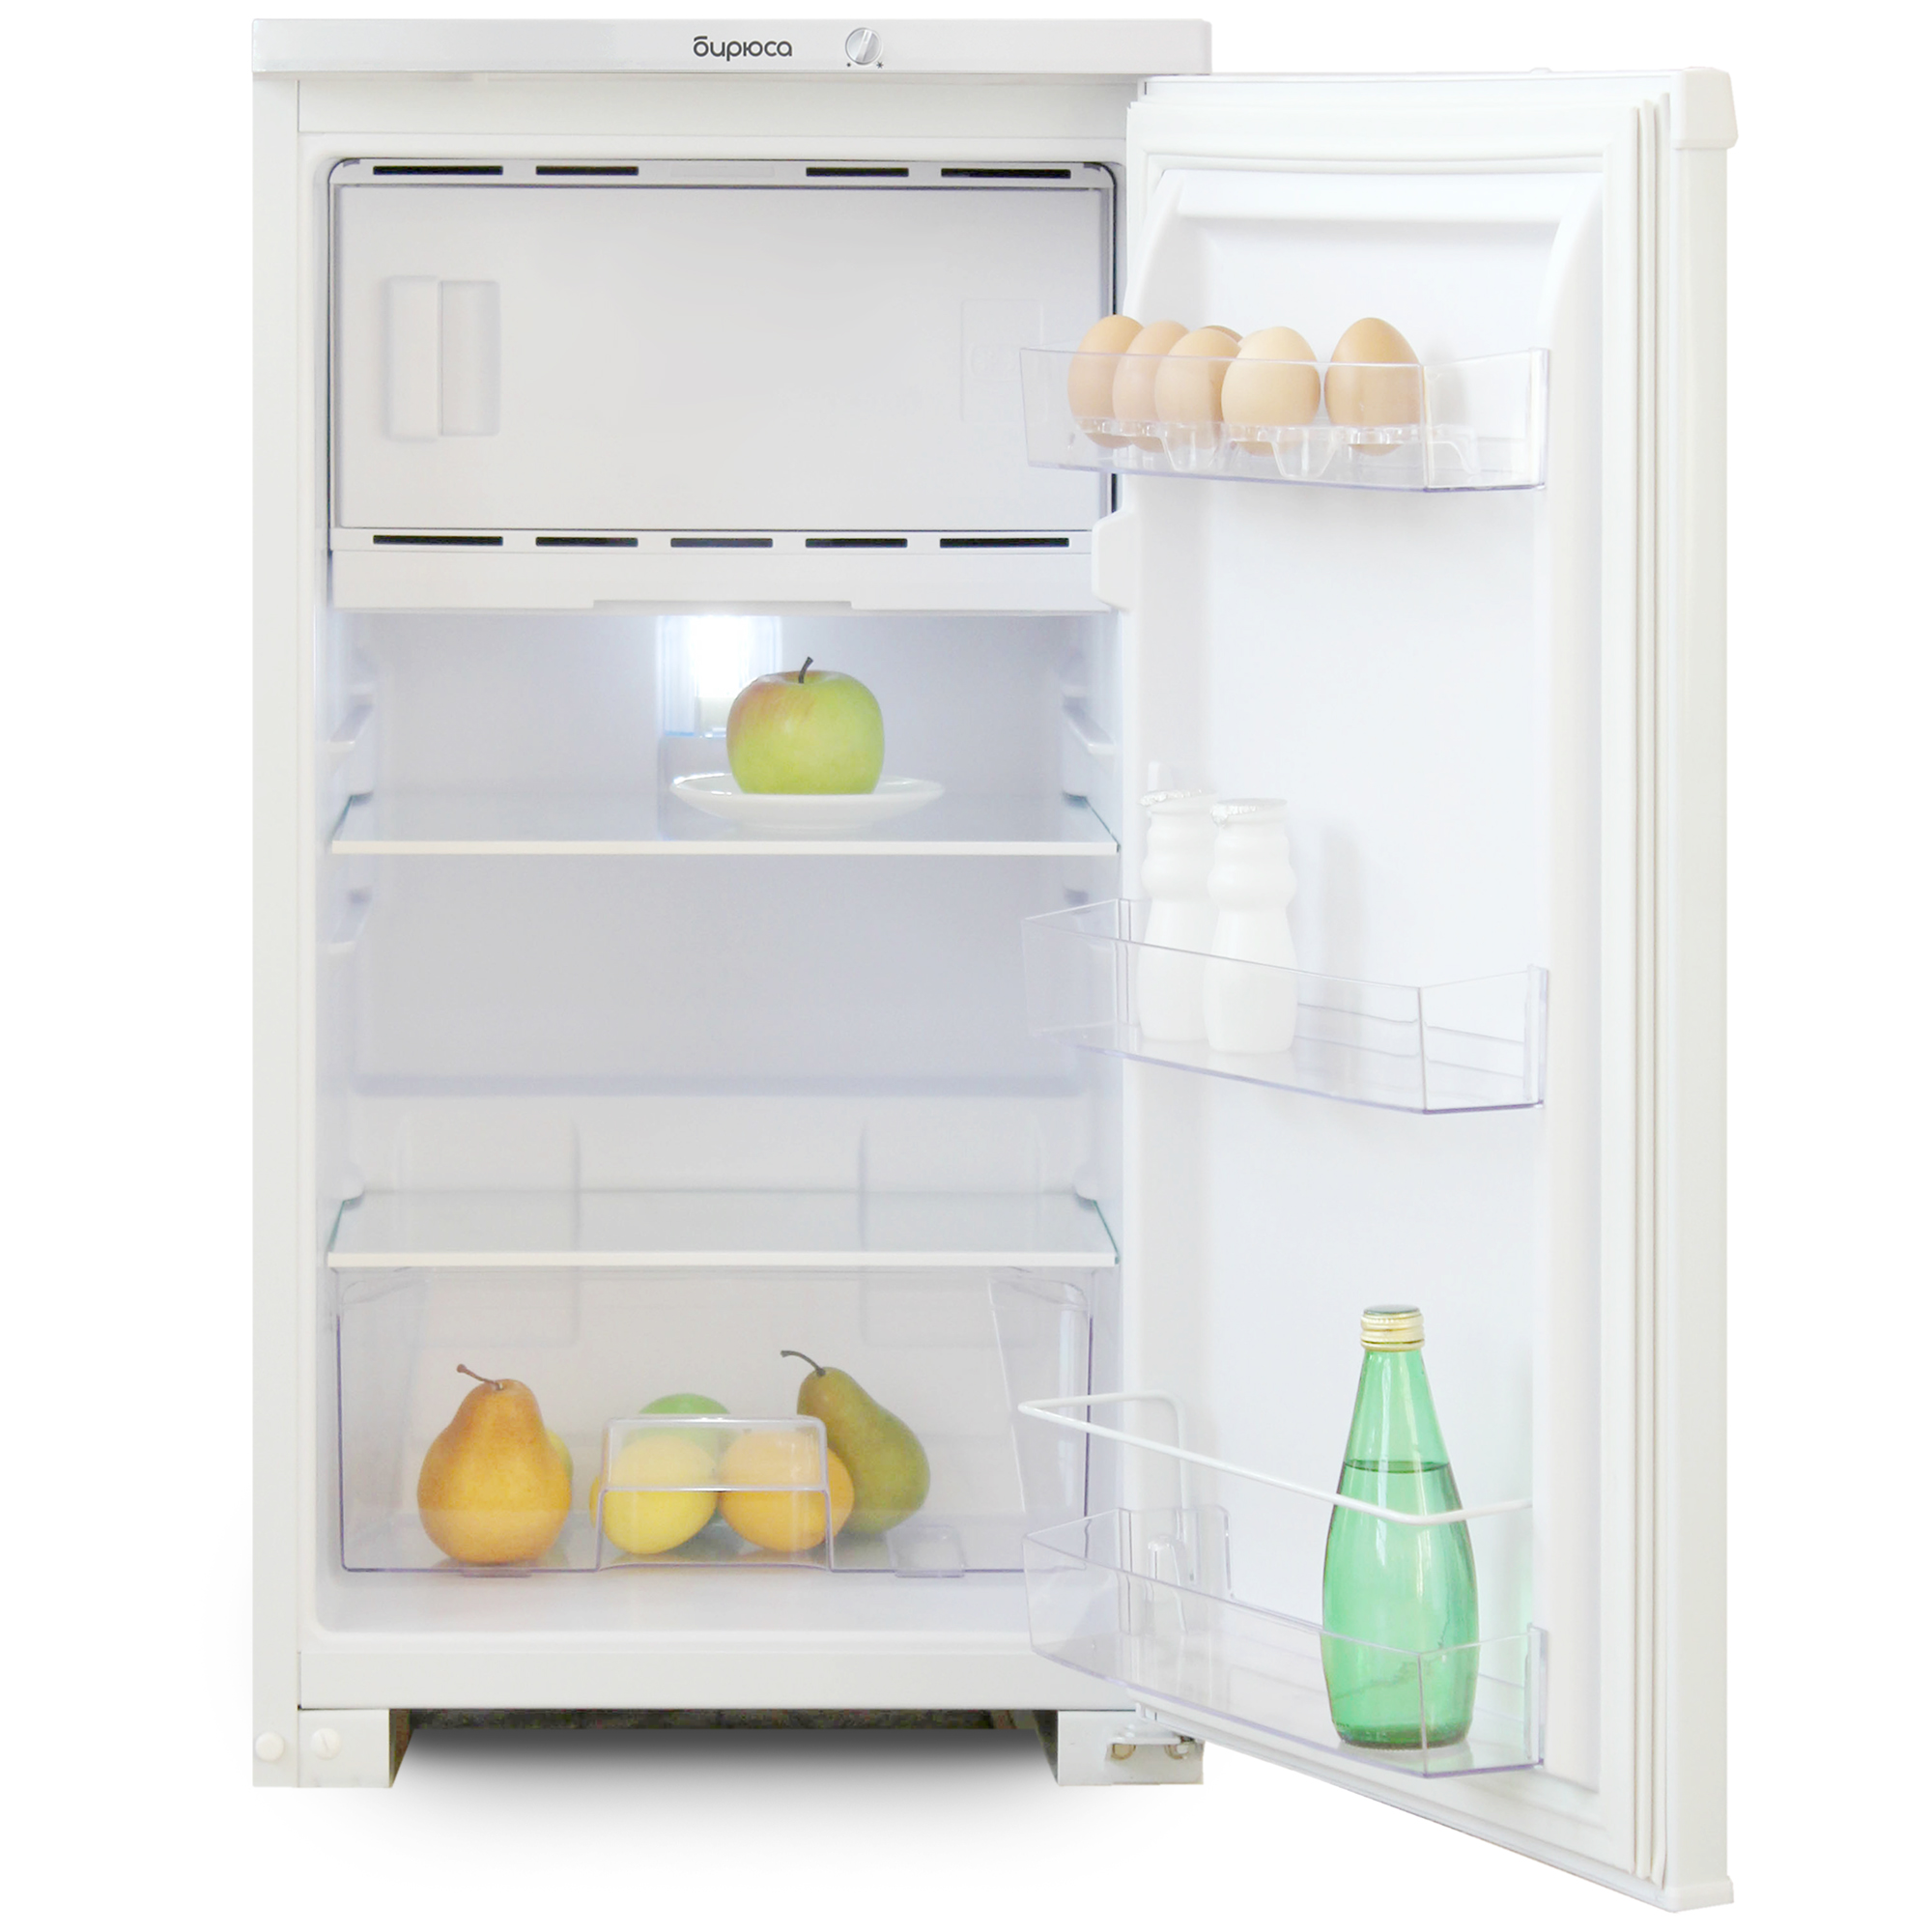 Холодильник Бирюса -108  (общий V 115л;  V холод. камеры 88л.; г.р. 86,5х48х60,5) цвет белый 